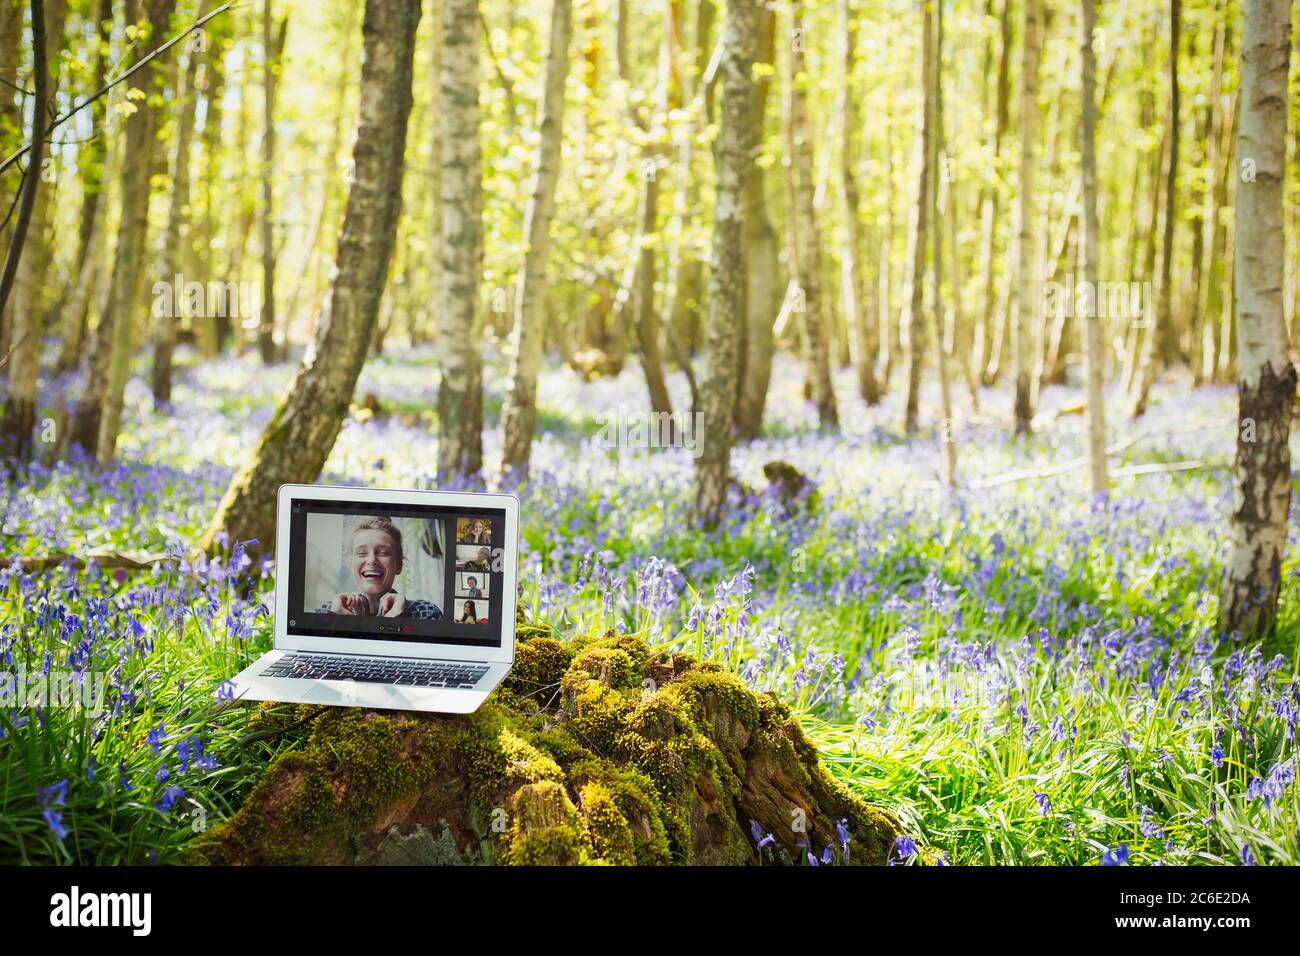 Amici che videochattano sullo schermo del laptop in boschi idilliaci Foto Stock